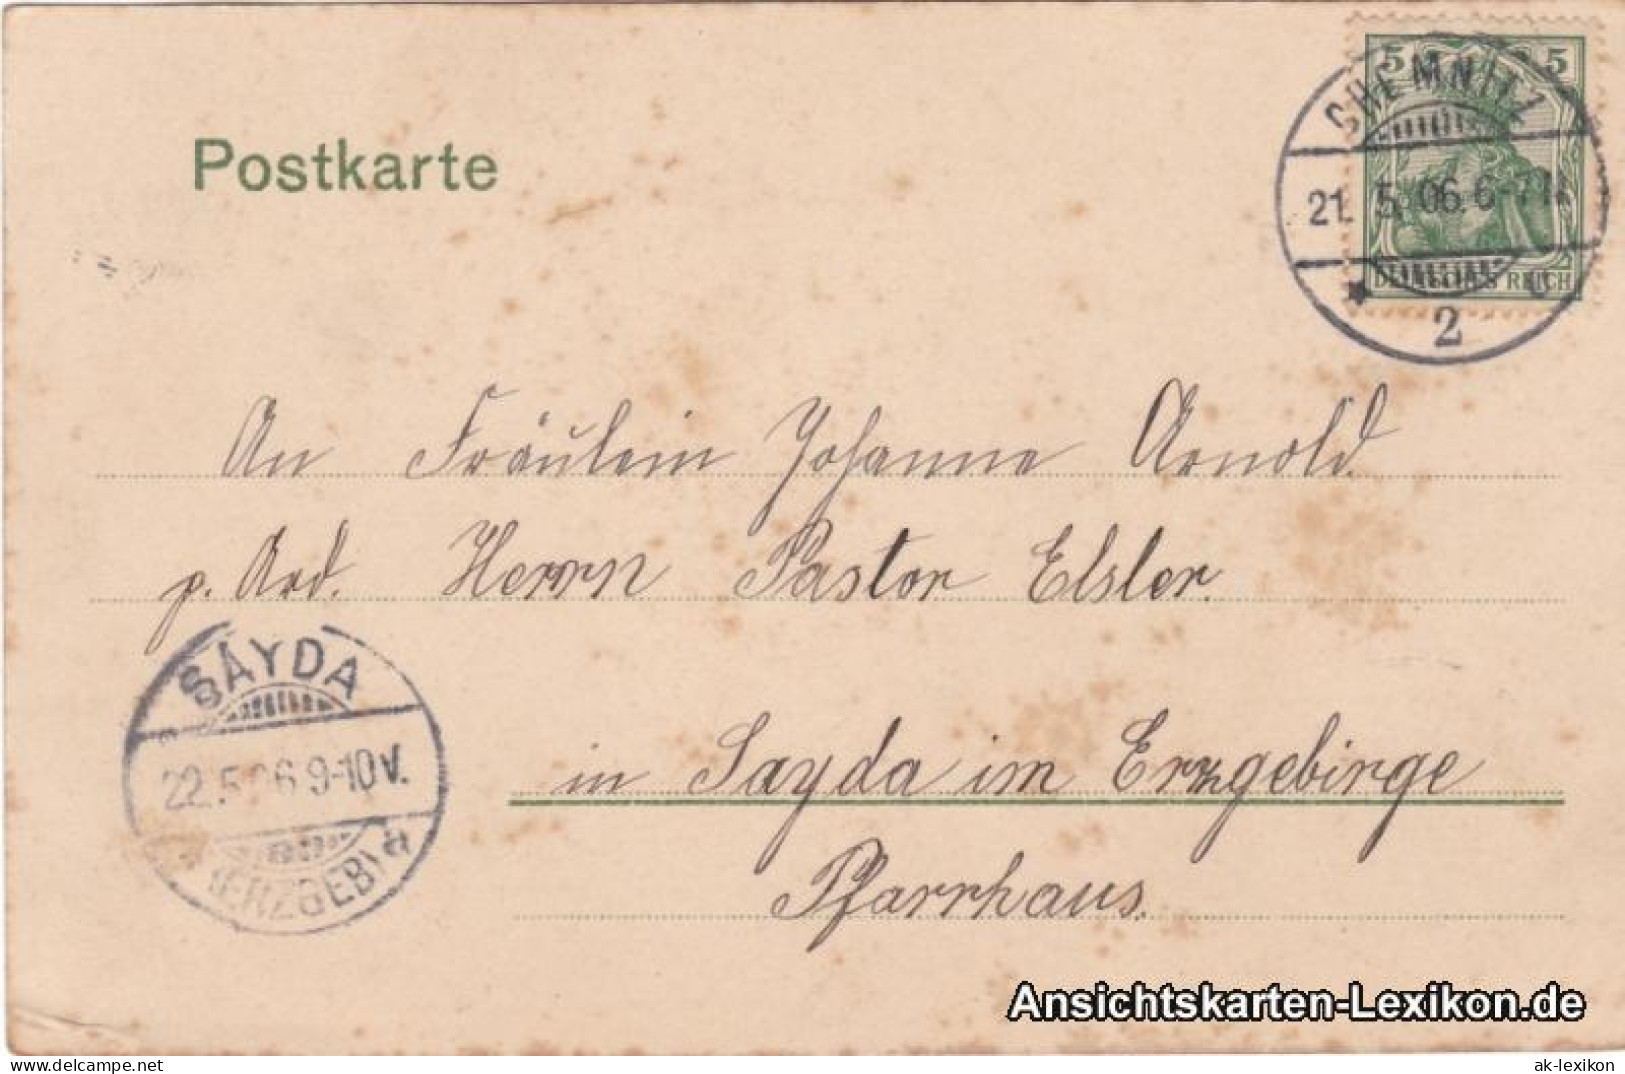 Ansichtskarte Chemnitz Partie Am Schloßteich - Anlegestelle 1906 - Chemnitz